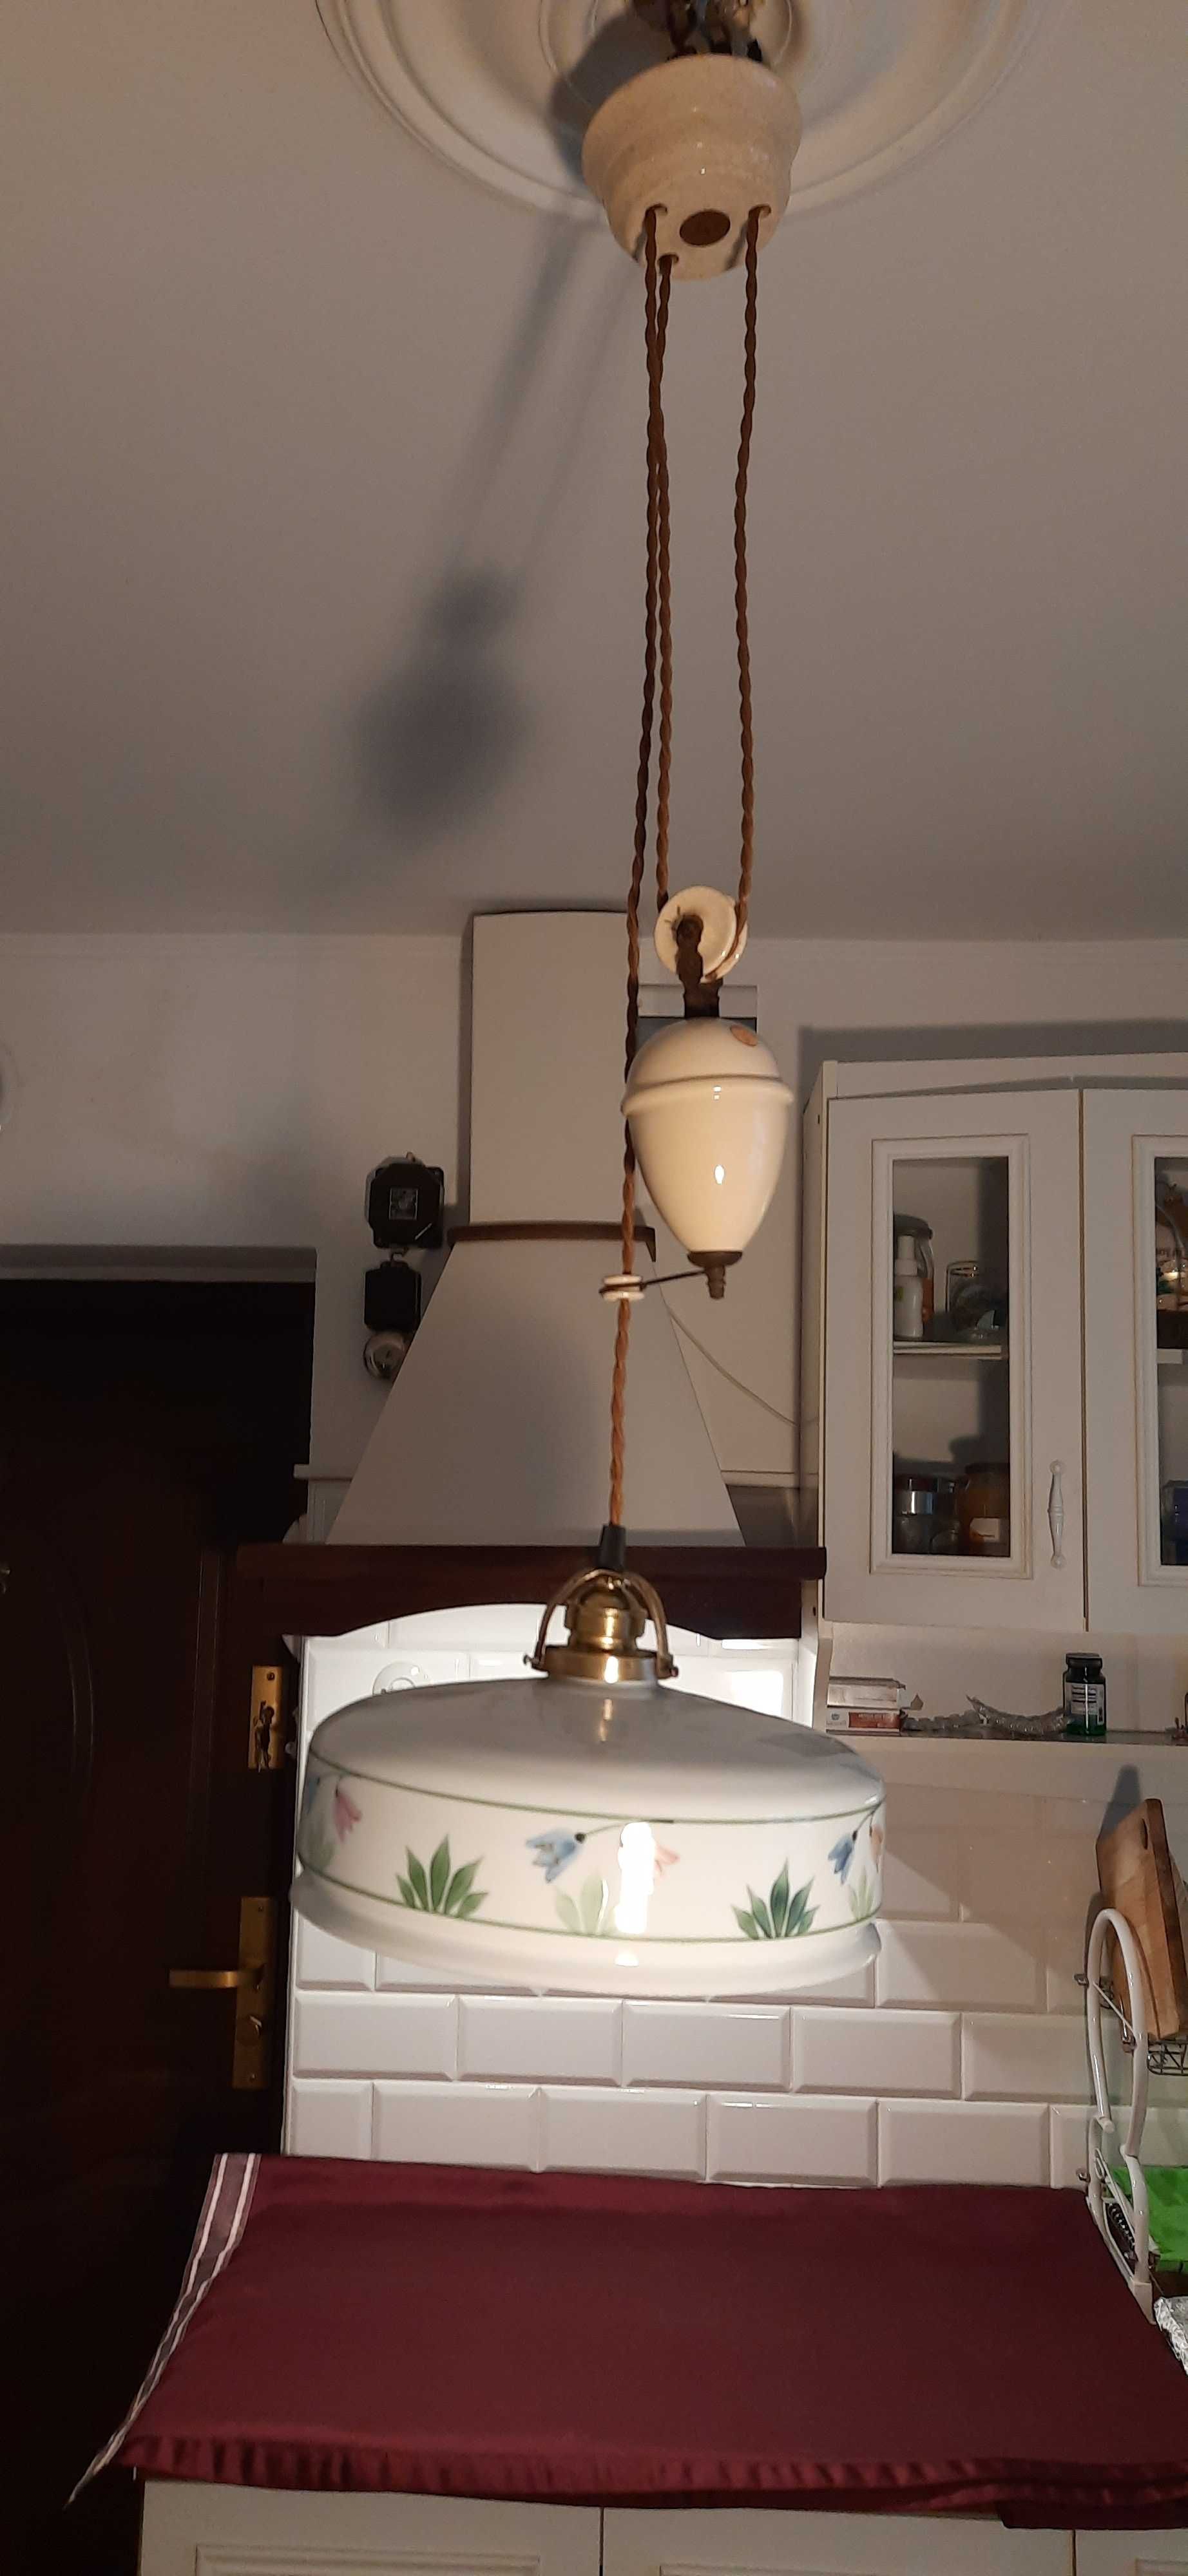 Przedwojenna lampa kuchenna z przeciwwagą porcelanową (1)